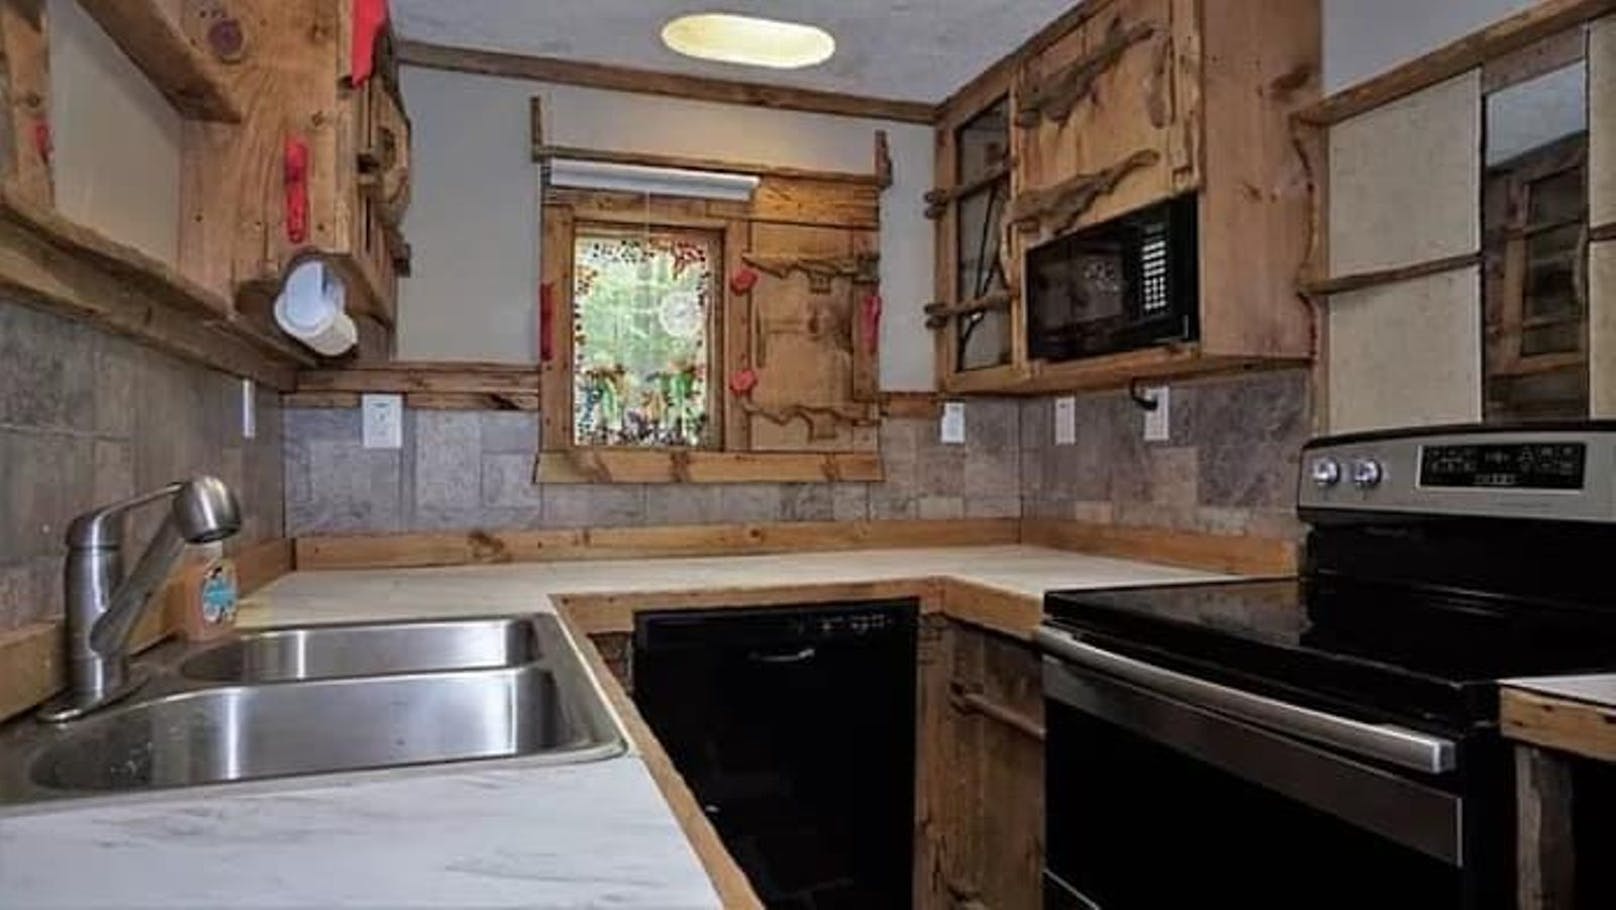 Das Haus ist mit vielen kleinen Details ausgestattet, zum Beispiel die Verzierungen an den Küchenschränken.